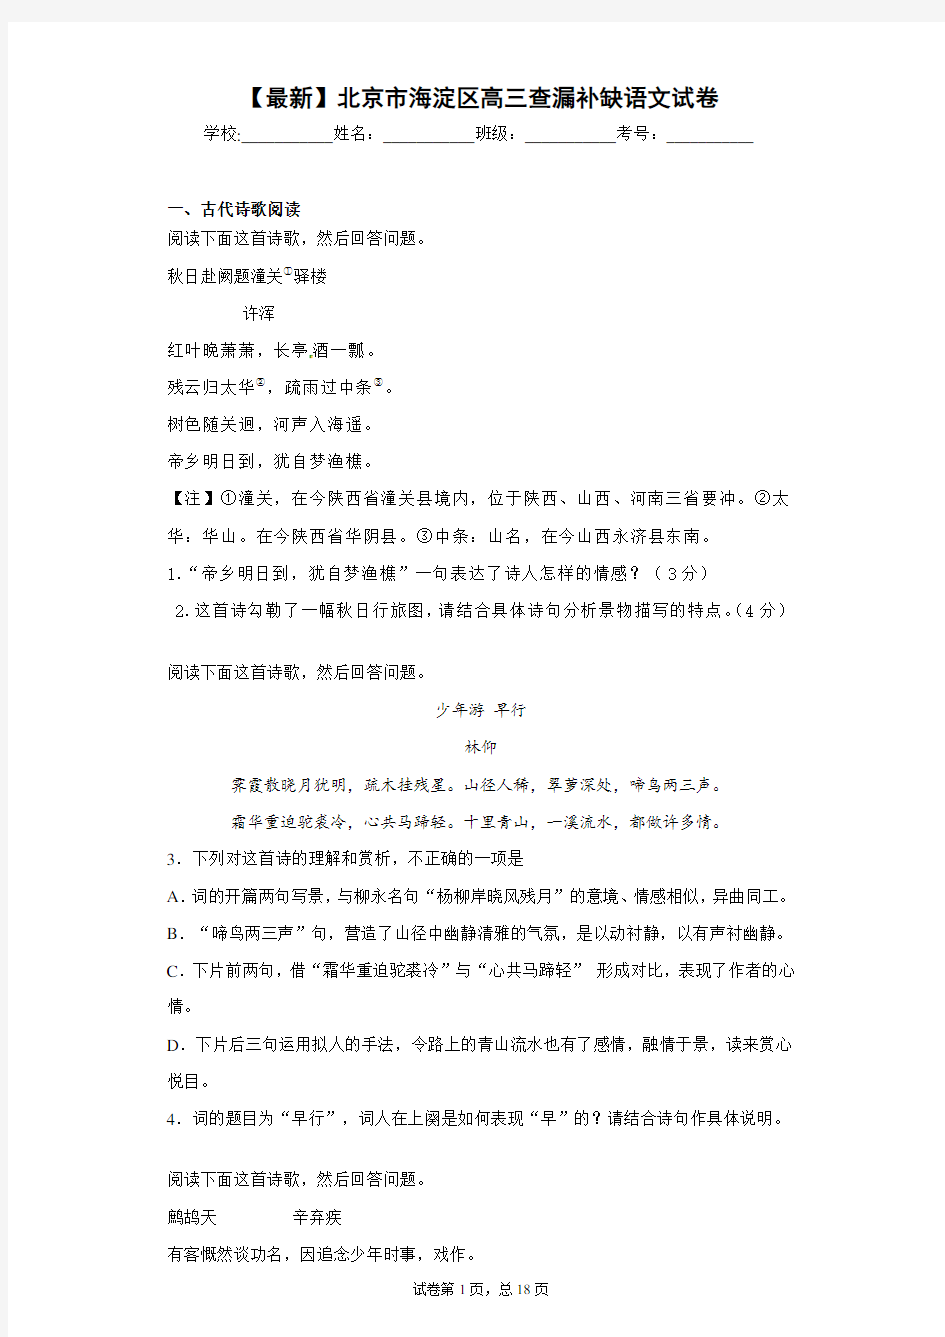 2021年北京市海淀区高三查漏补缺语文试卷(答案详解)